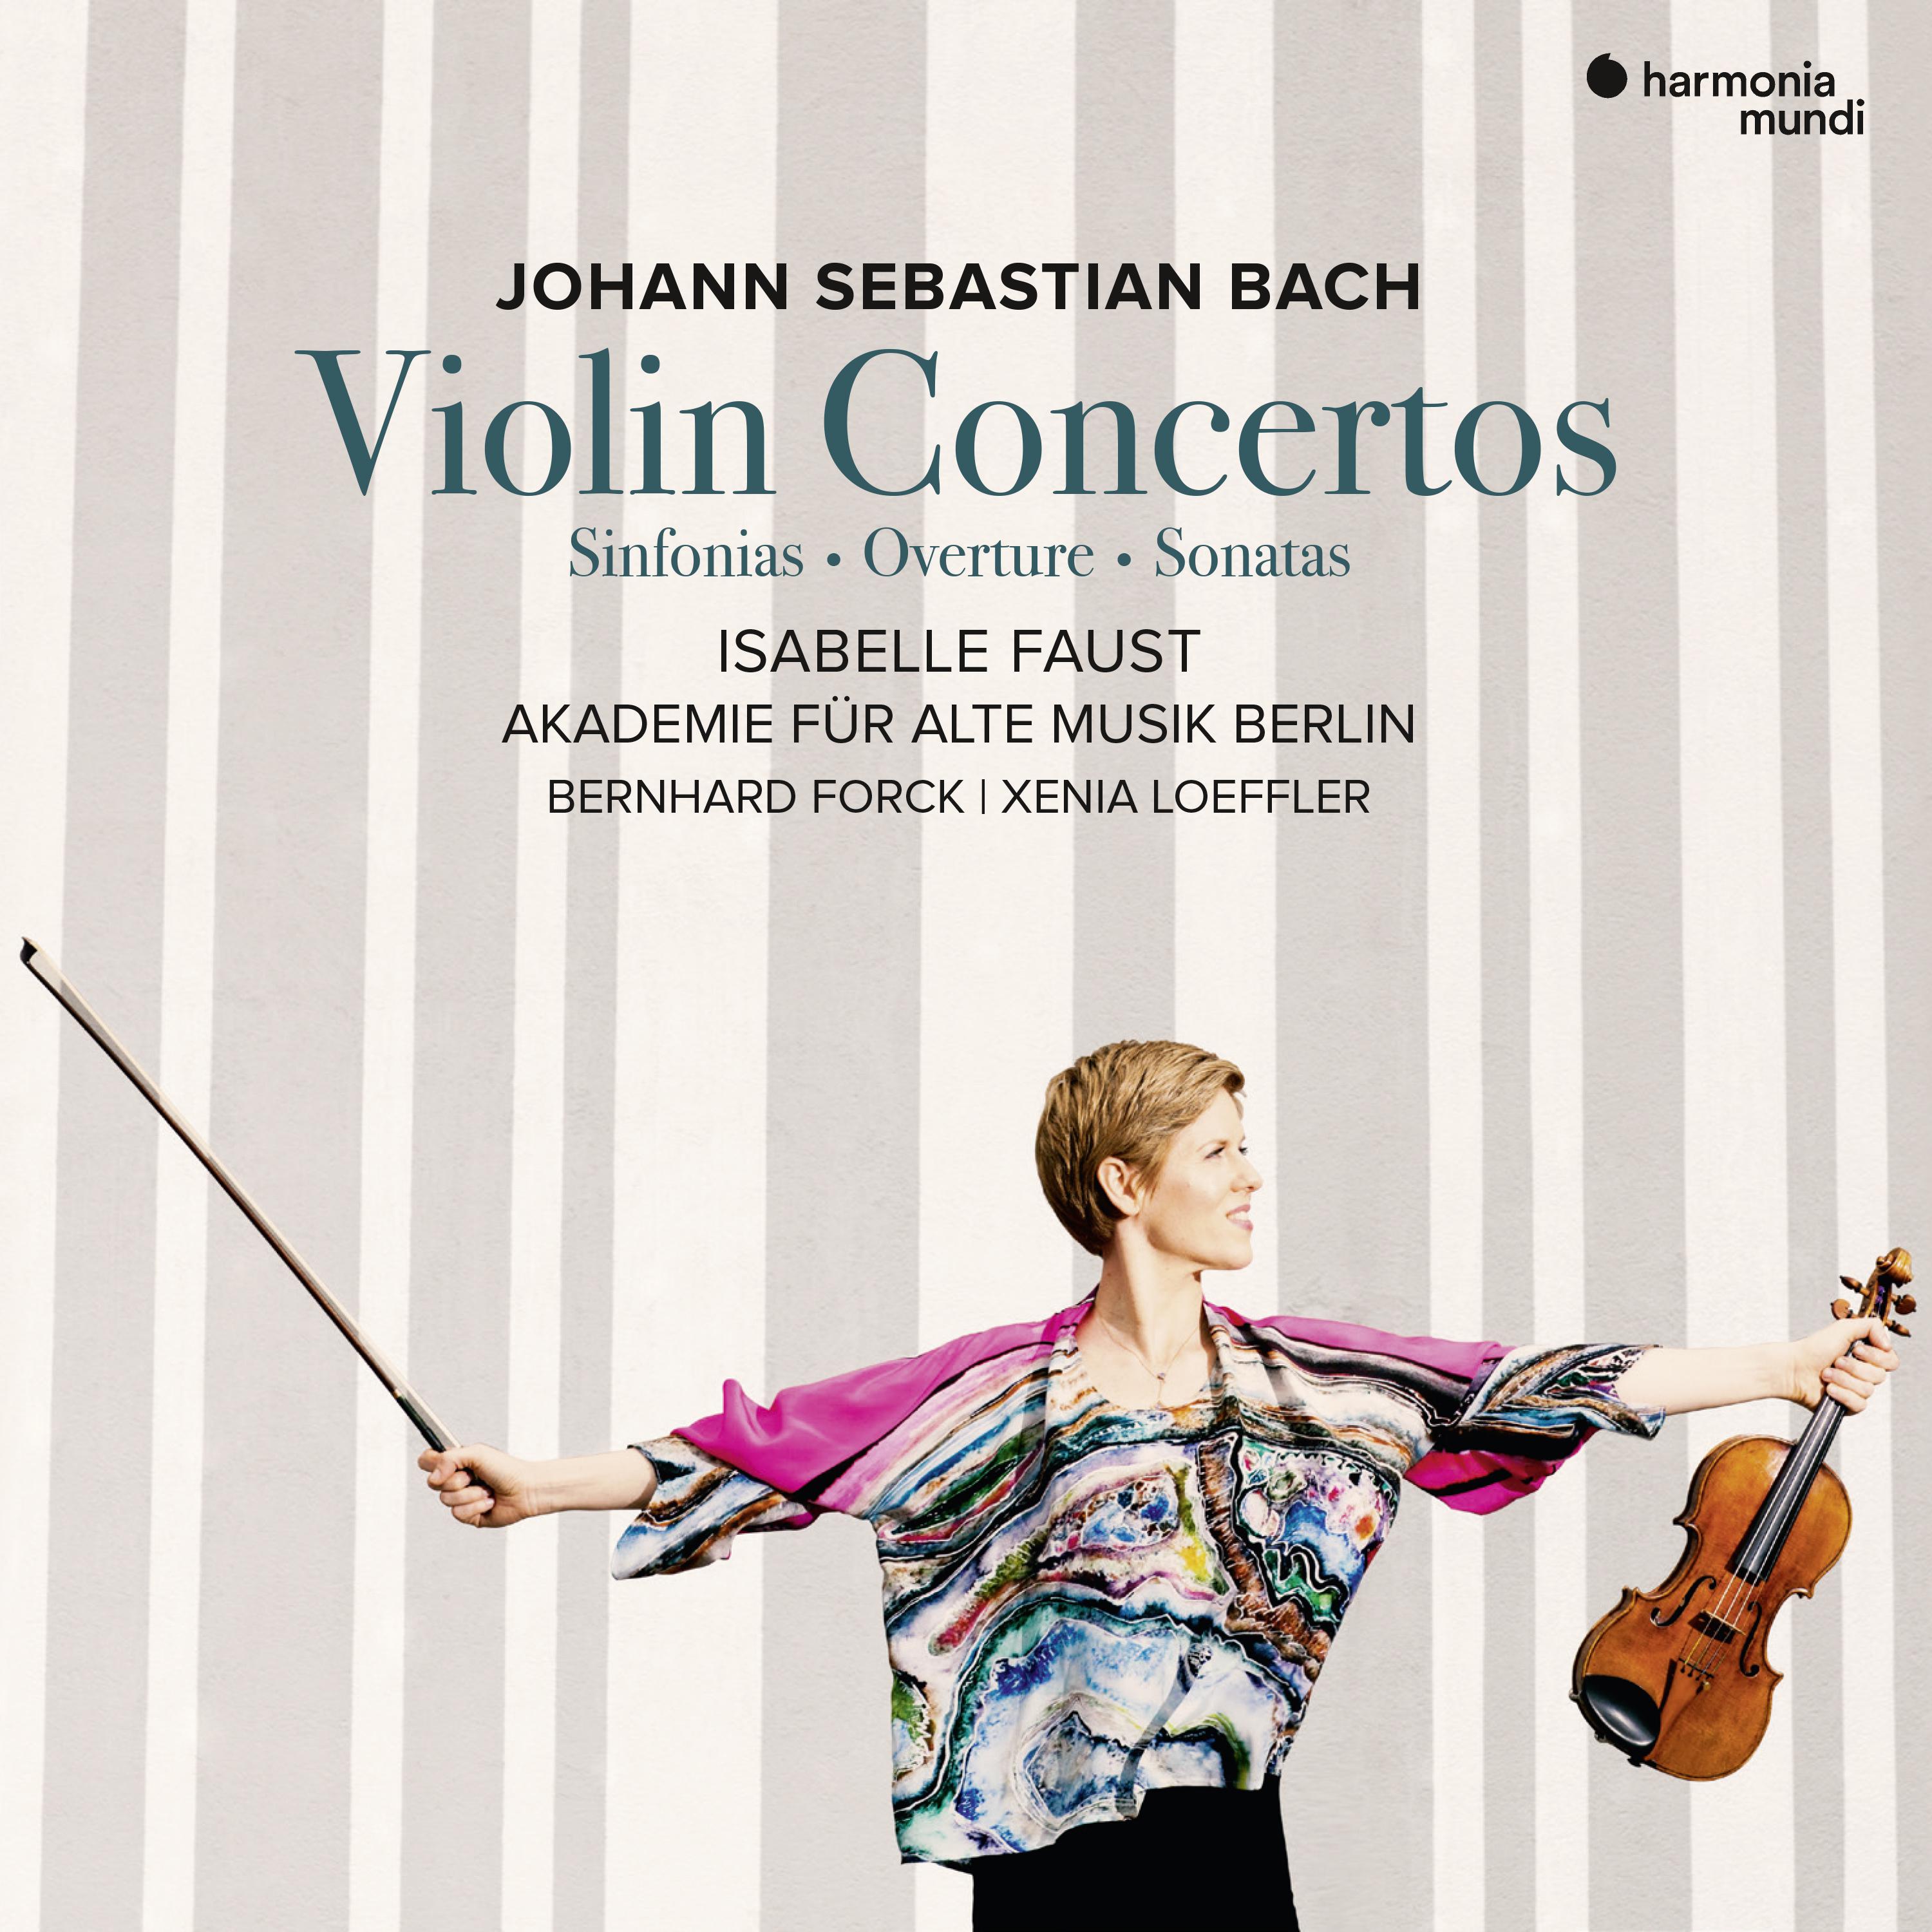 Concerto for violin and oboe in C Minor, BWV 1060R: II. Largo ovvero Adagio